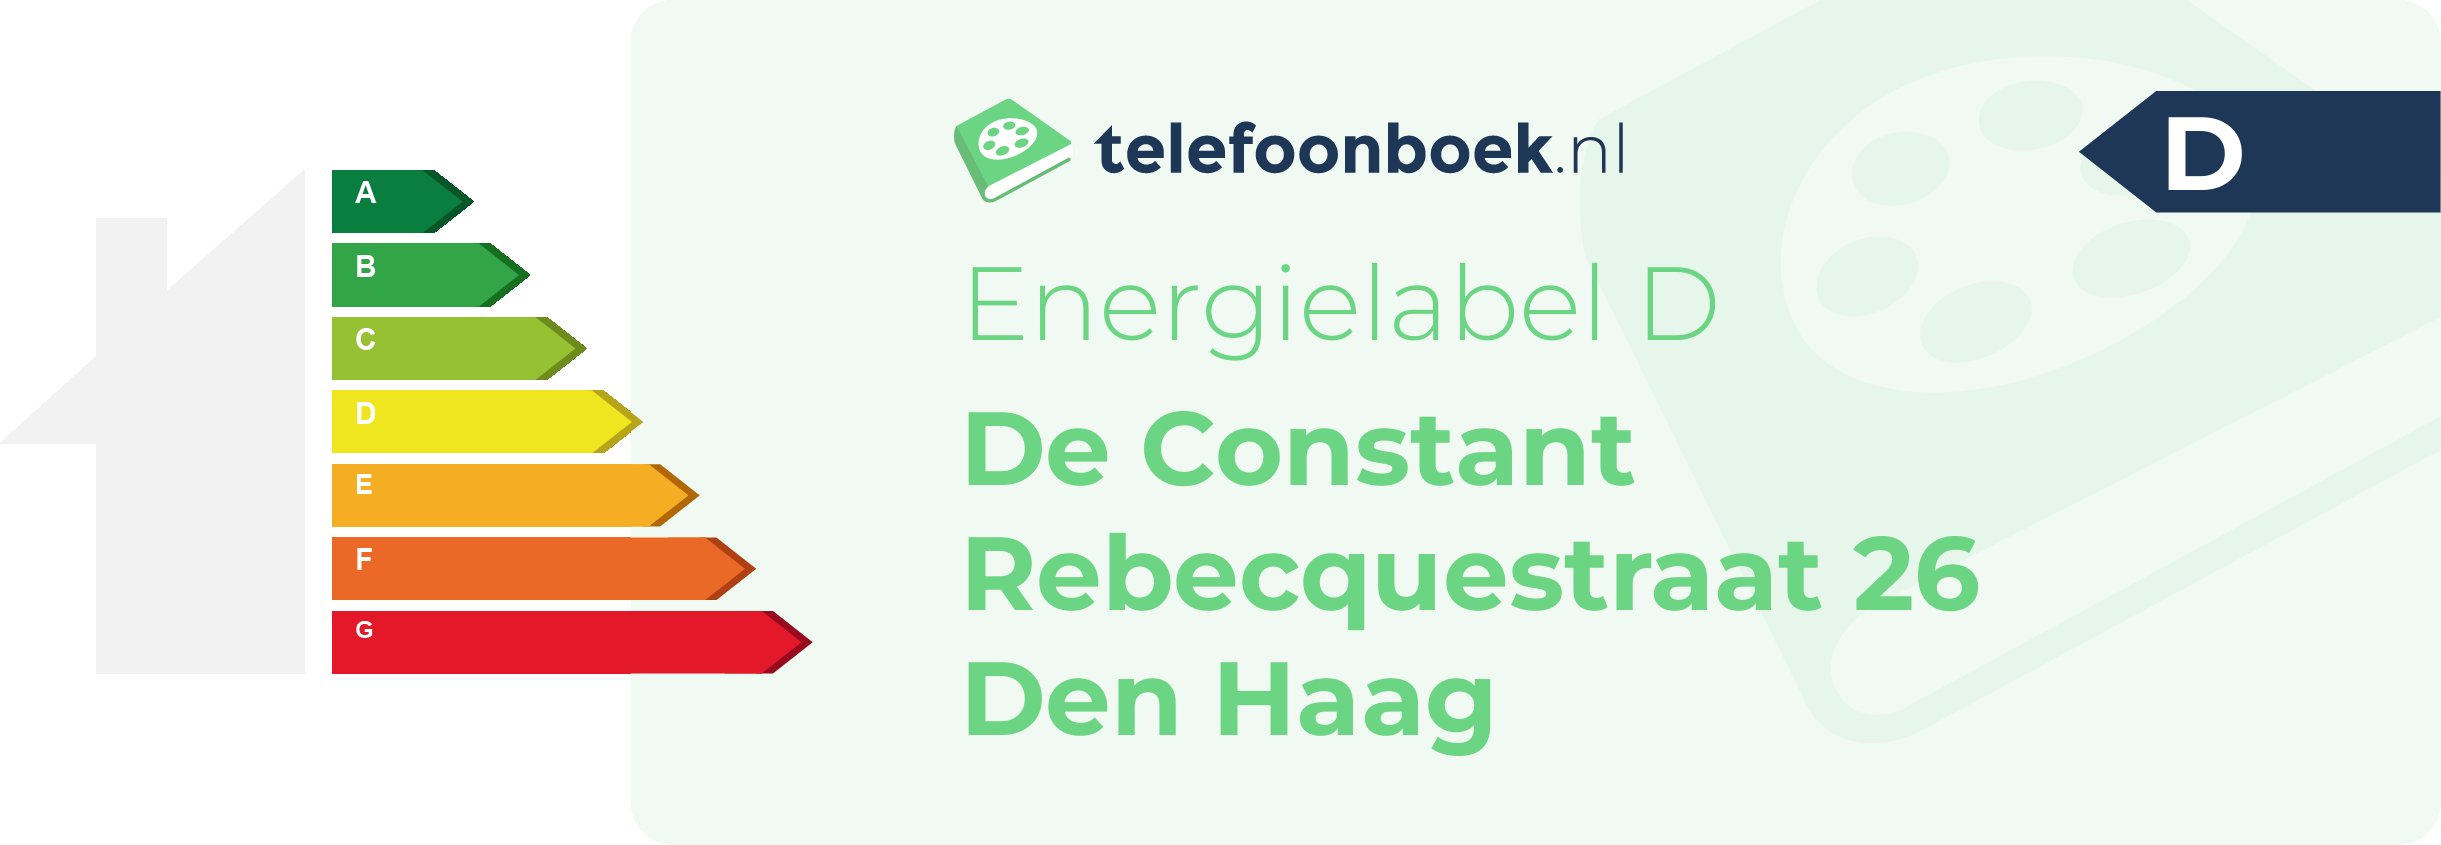 Energielabel De Constant Rebecquestraat 26 Den Haag